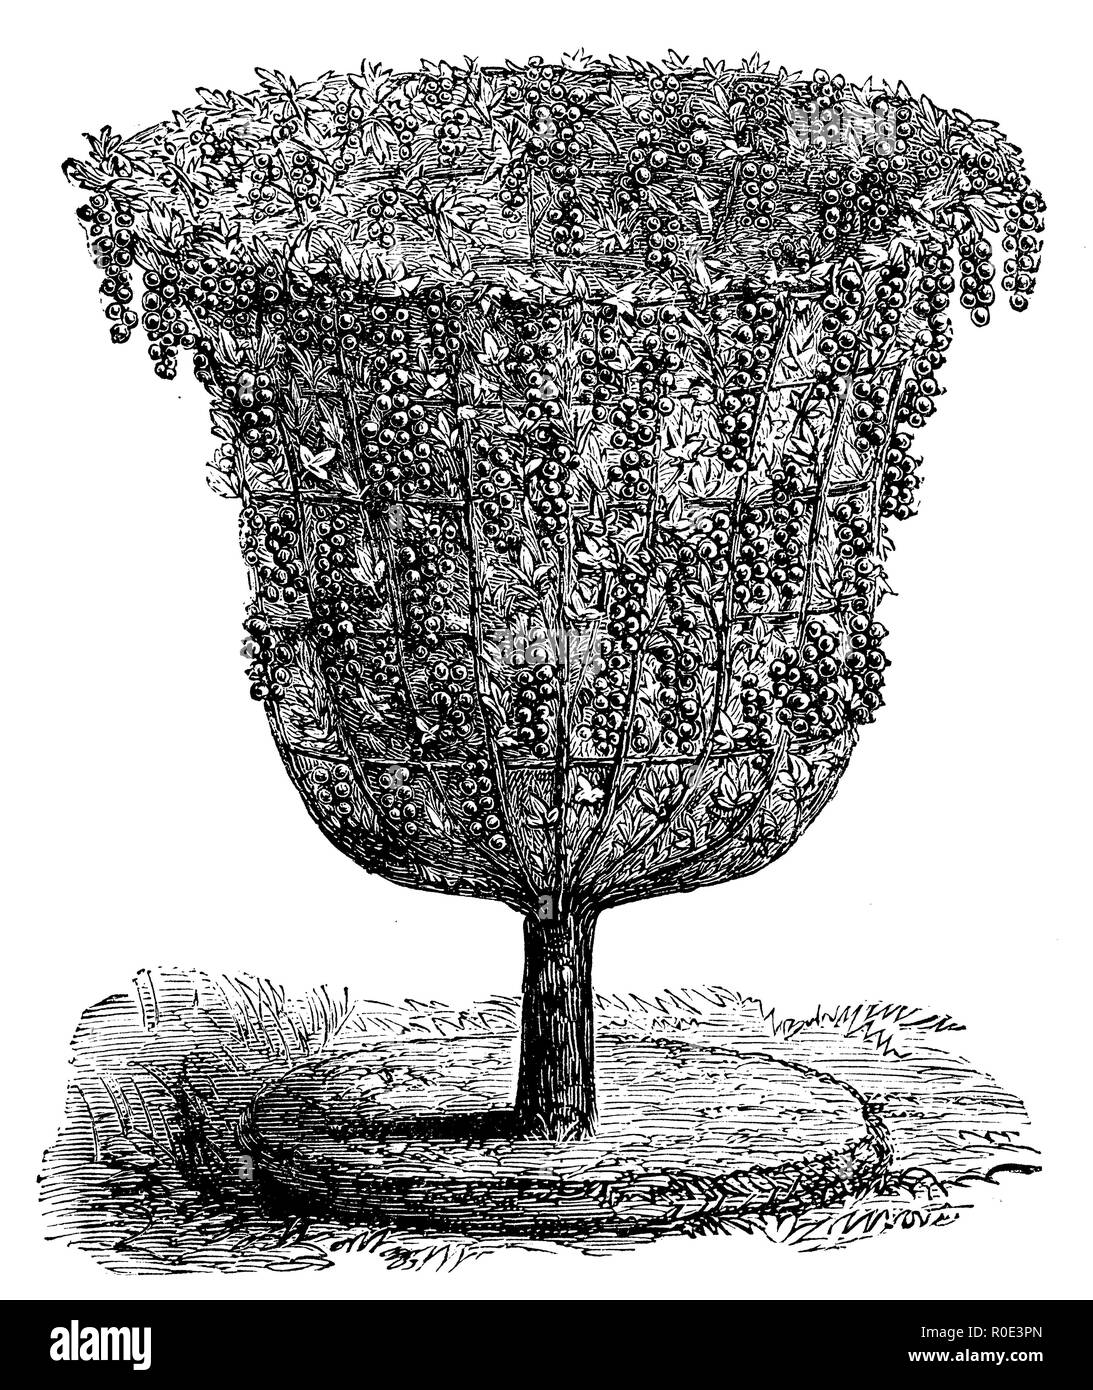 Johannisbeere Bush in Vase, 1877 Stockfoto